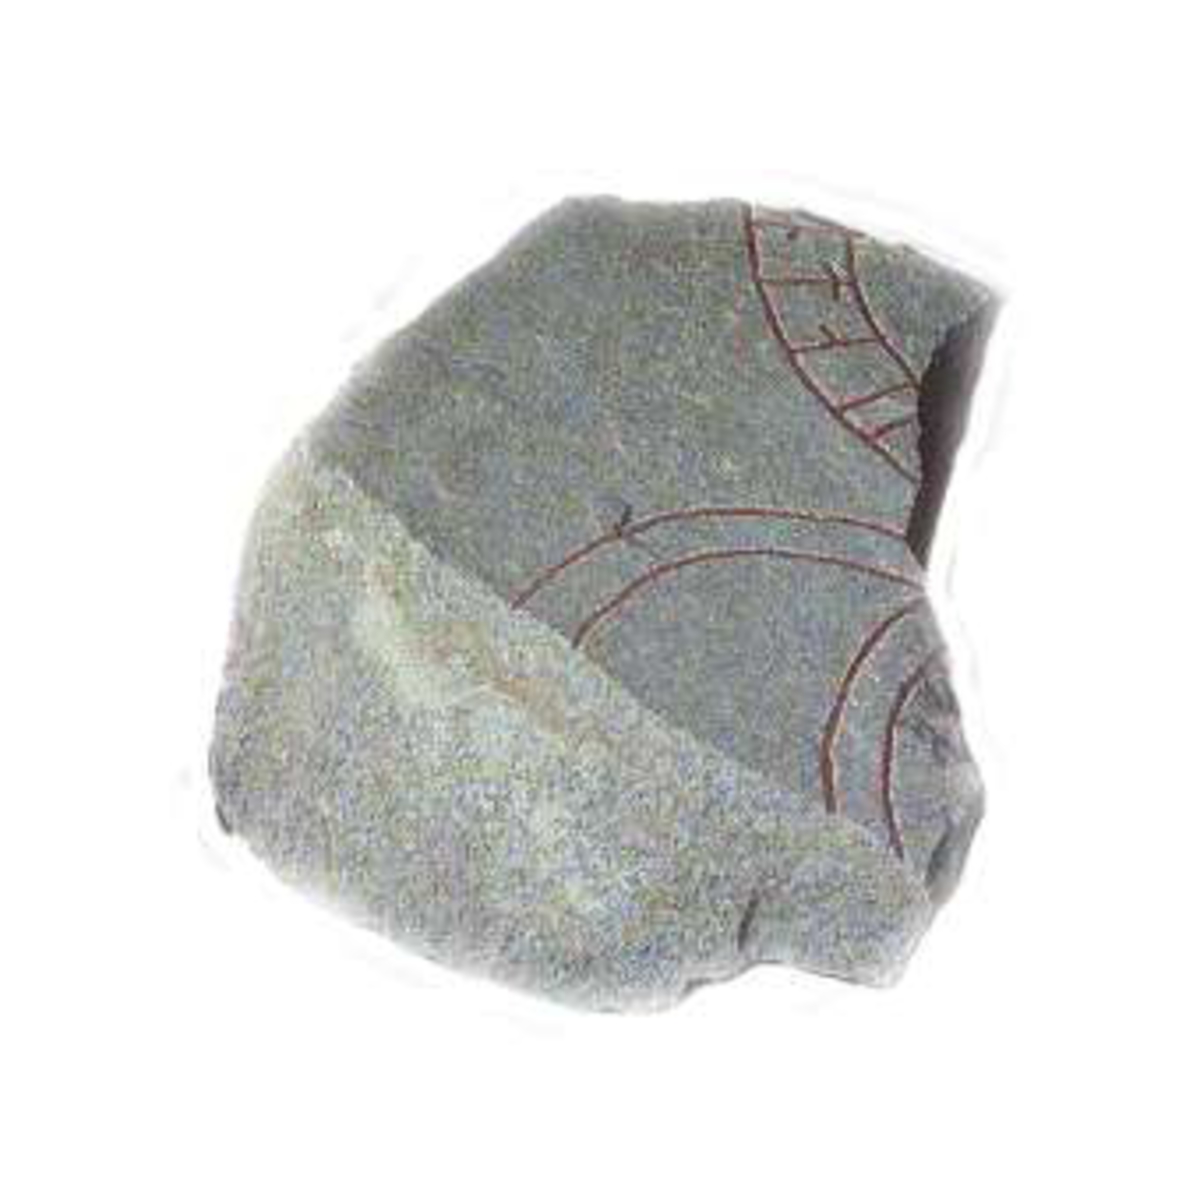 Fragment av runsten, av svartspräcklig medelkornig granit med röda färginslag. Rester av murbruk på fragmentets smalsidor. Runhöjd 7 cm. Inskrift: ...nta--..